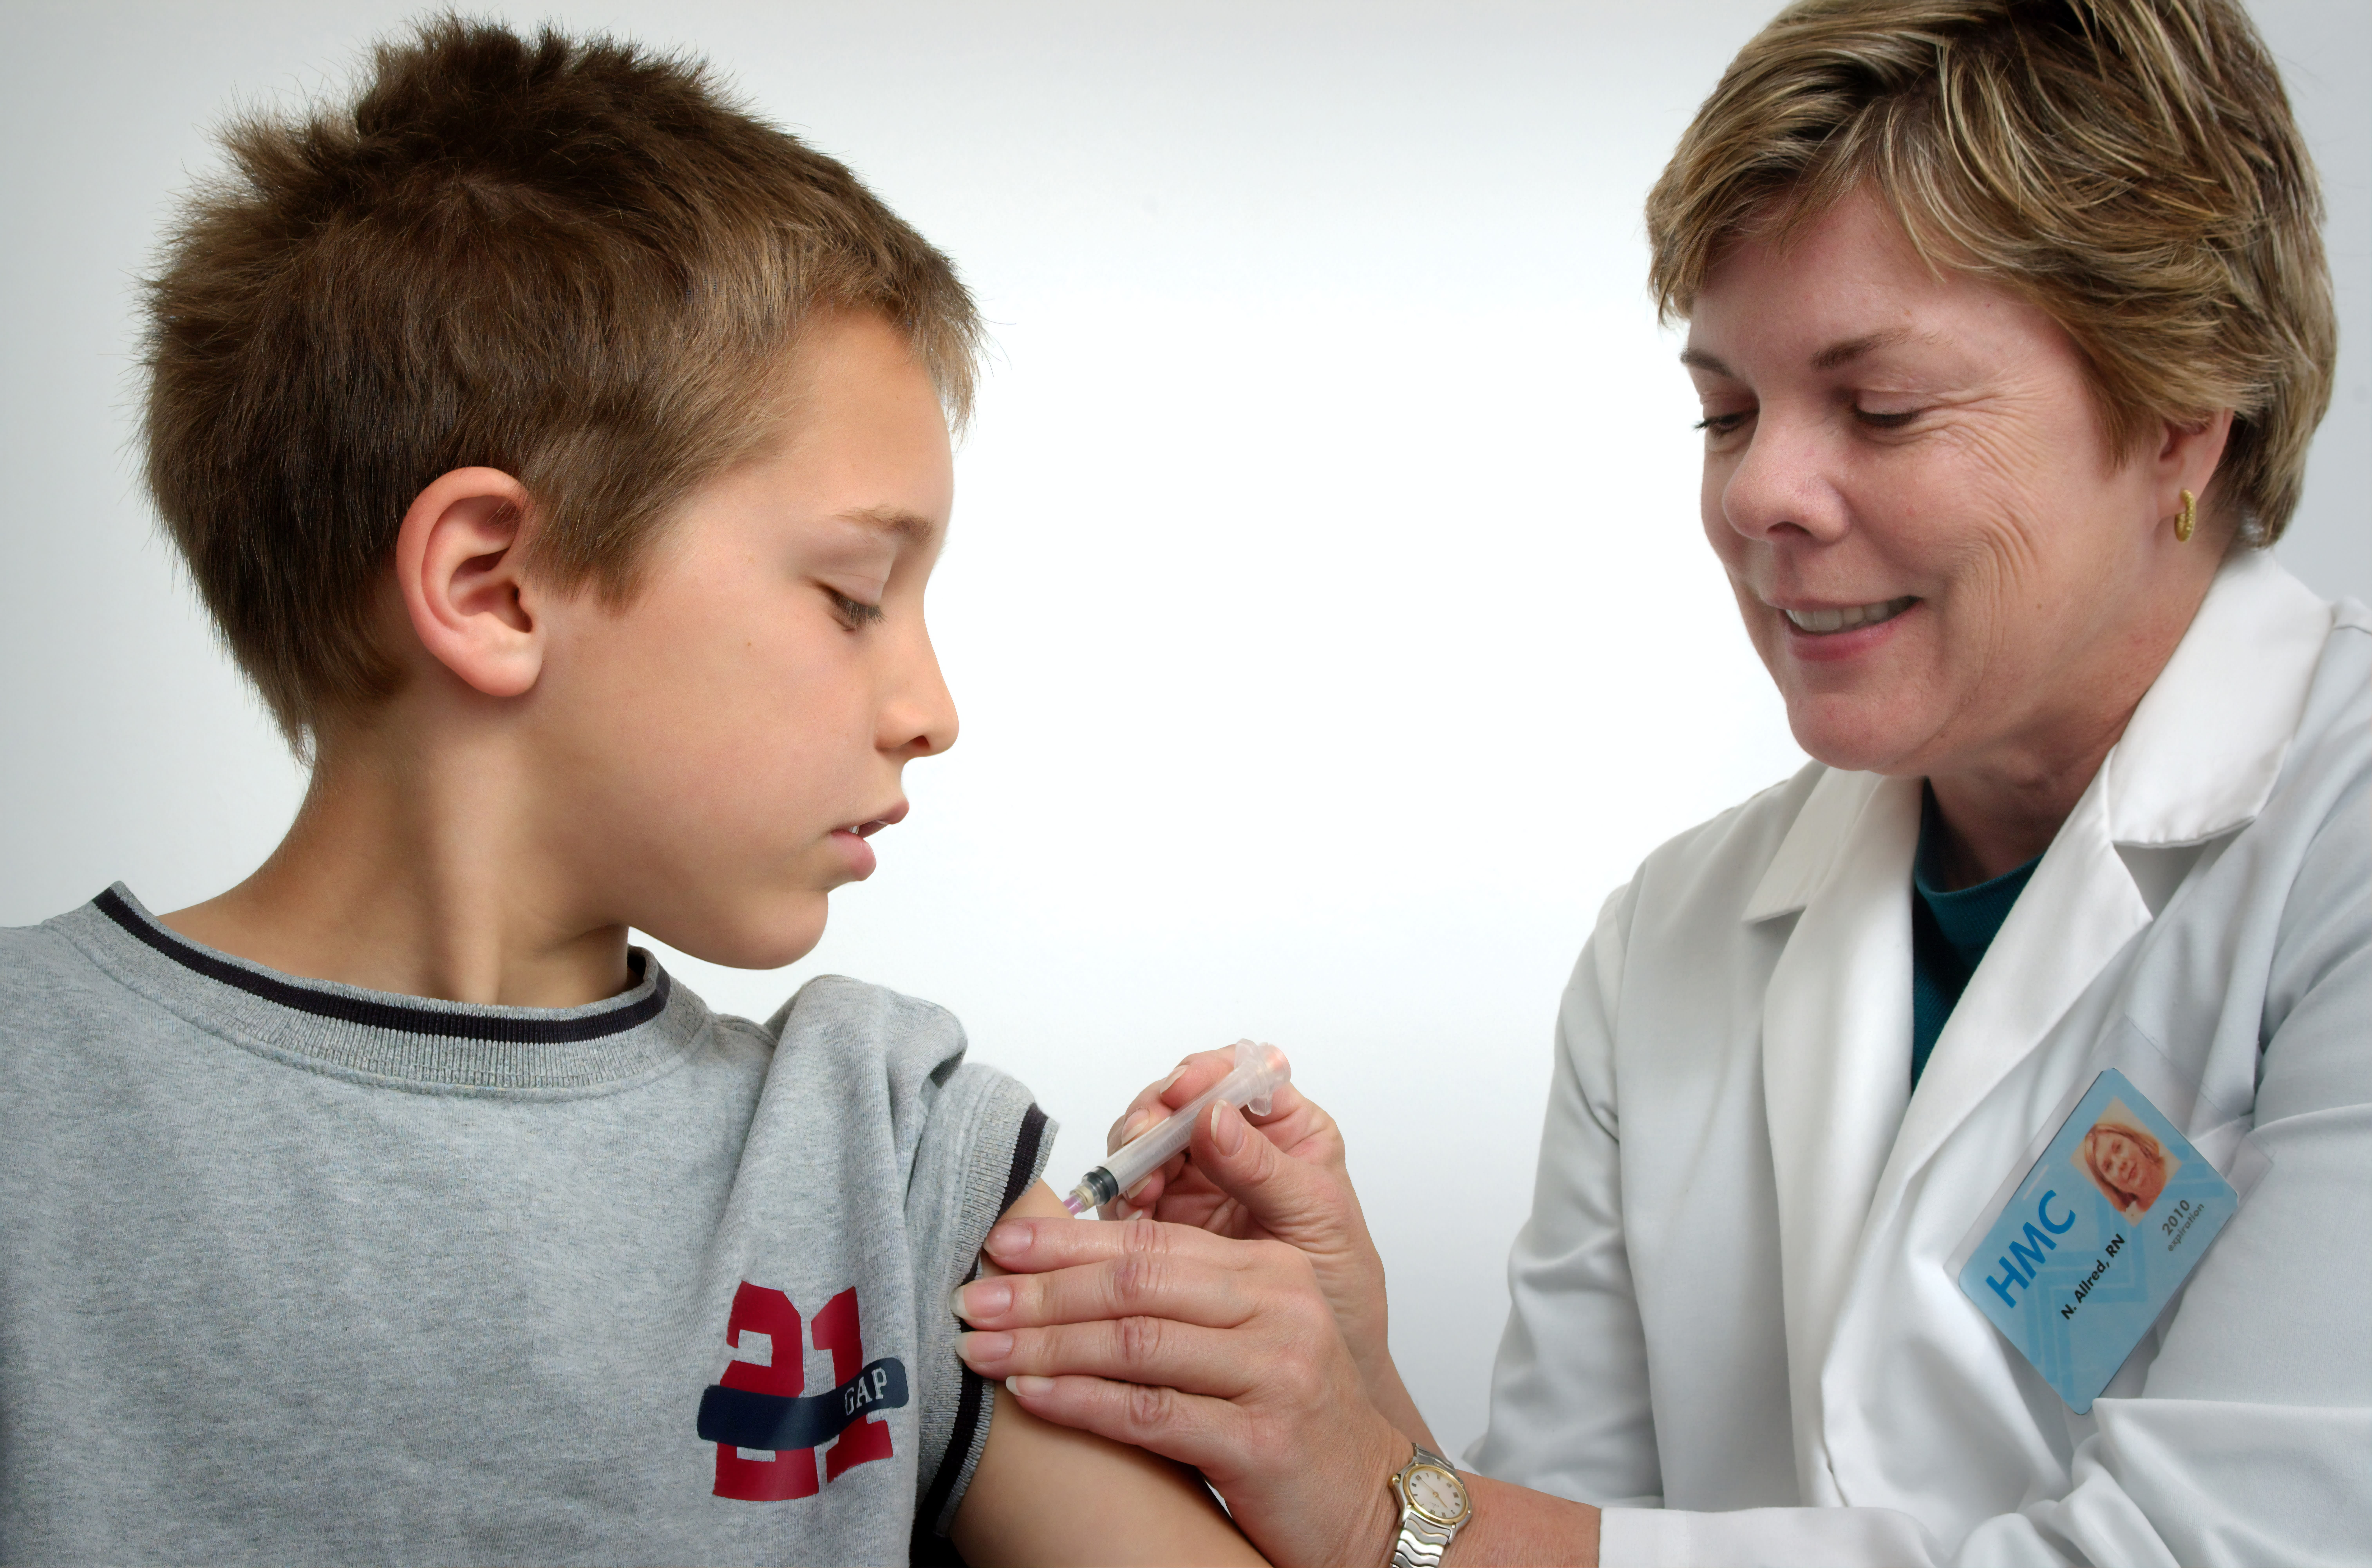 Sygeplejersken afbildet på dette fotografi fra 2006 var i gang med at administrere en intramuskulær vaccination i venstre skulder på en ung dreng.Sygeplejersken klemte den overliggende skulderhud for at immobilisere injektionsstedet.